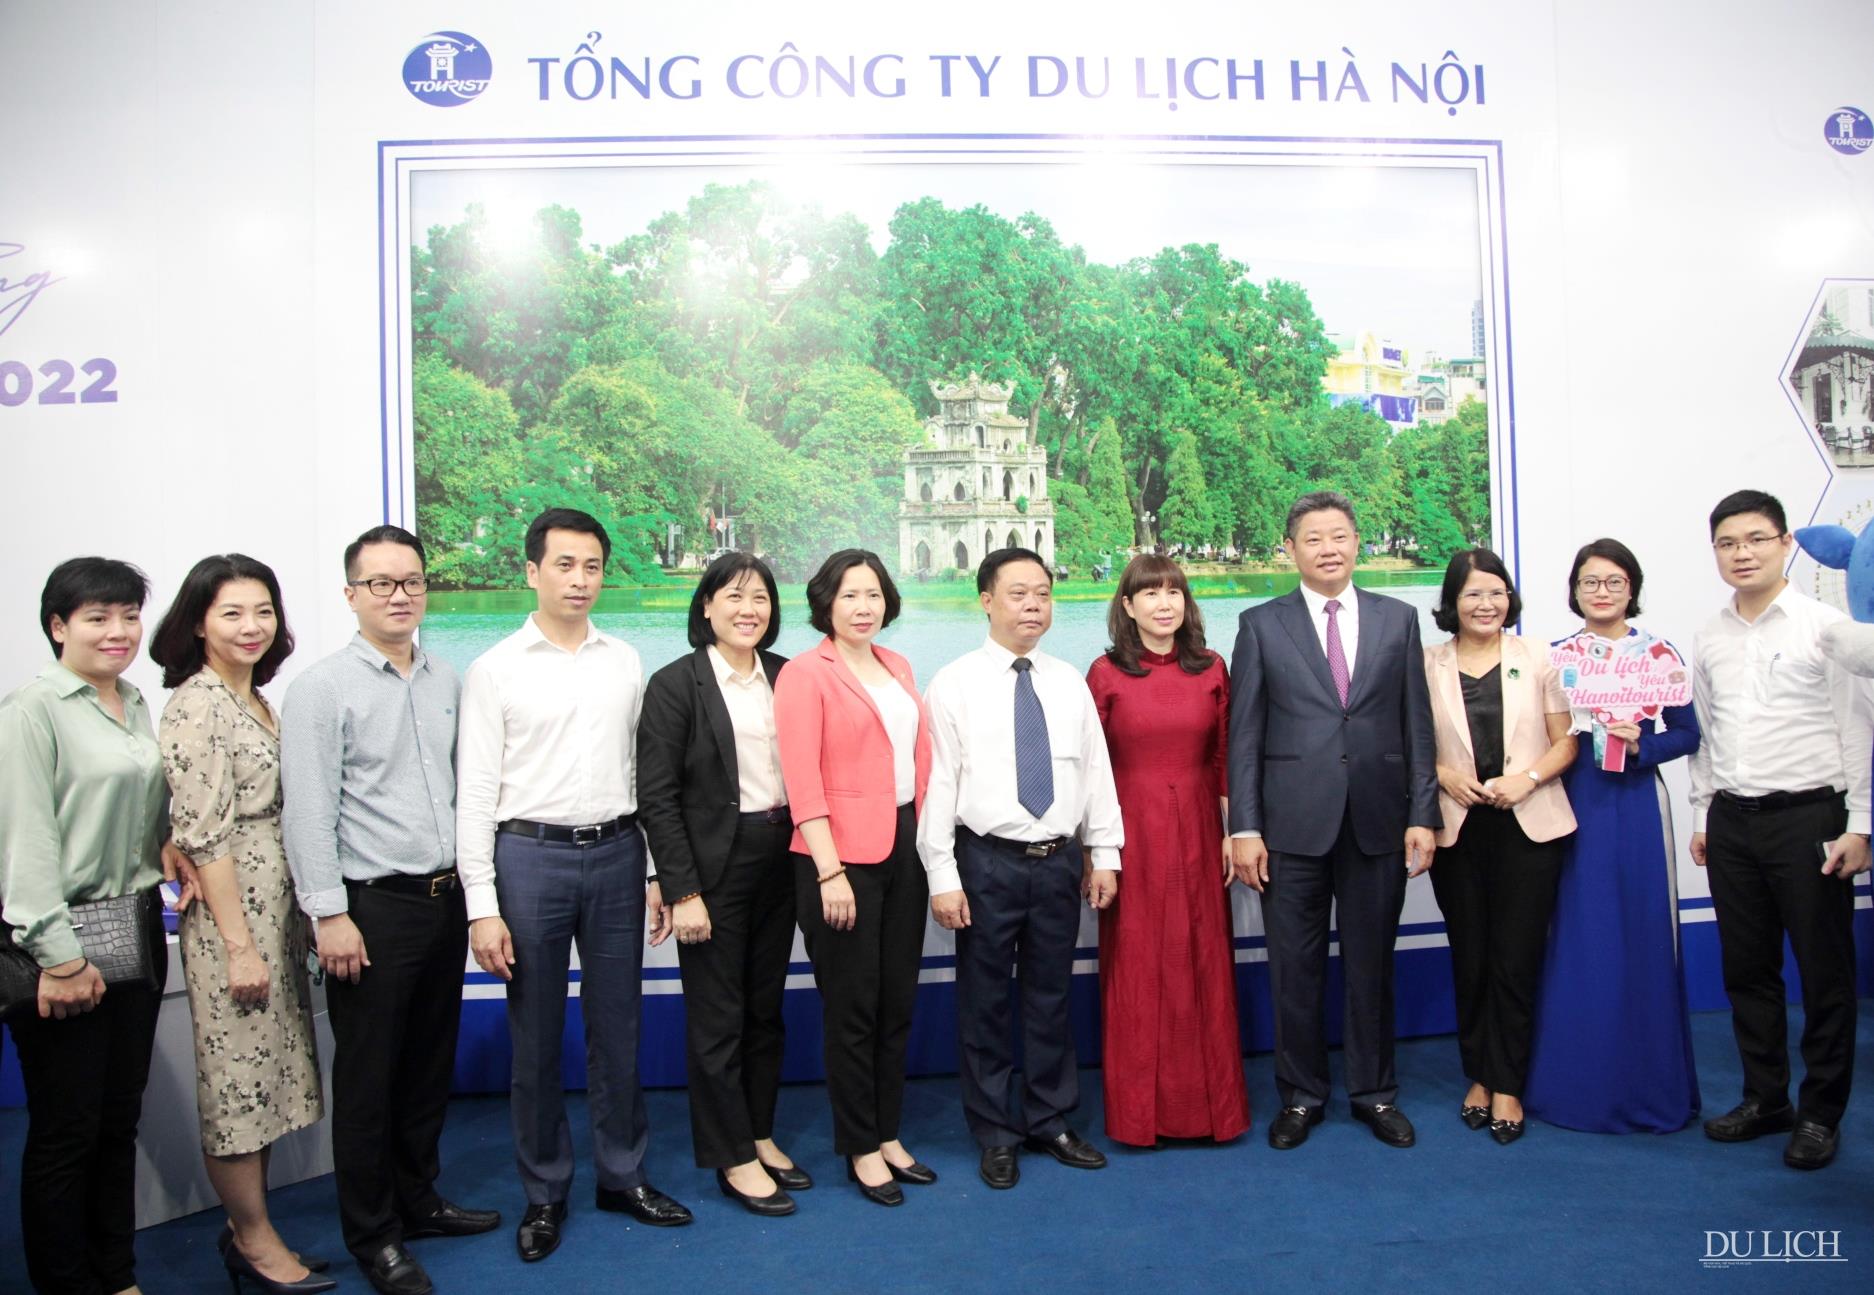 Các đại biểu chụp ảnh lưu niệm tại gian hàng Tổng Công ty Du lịch Hà Nội